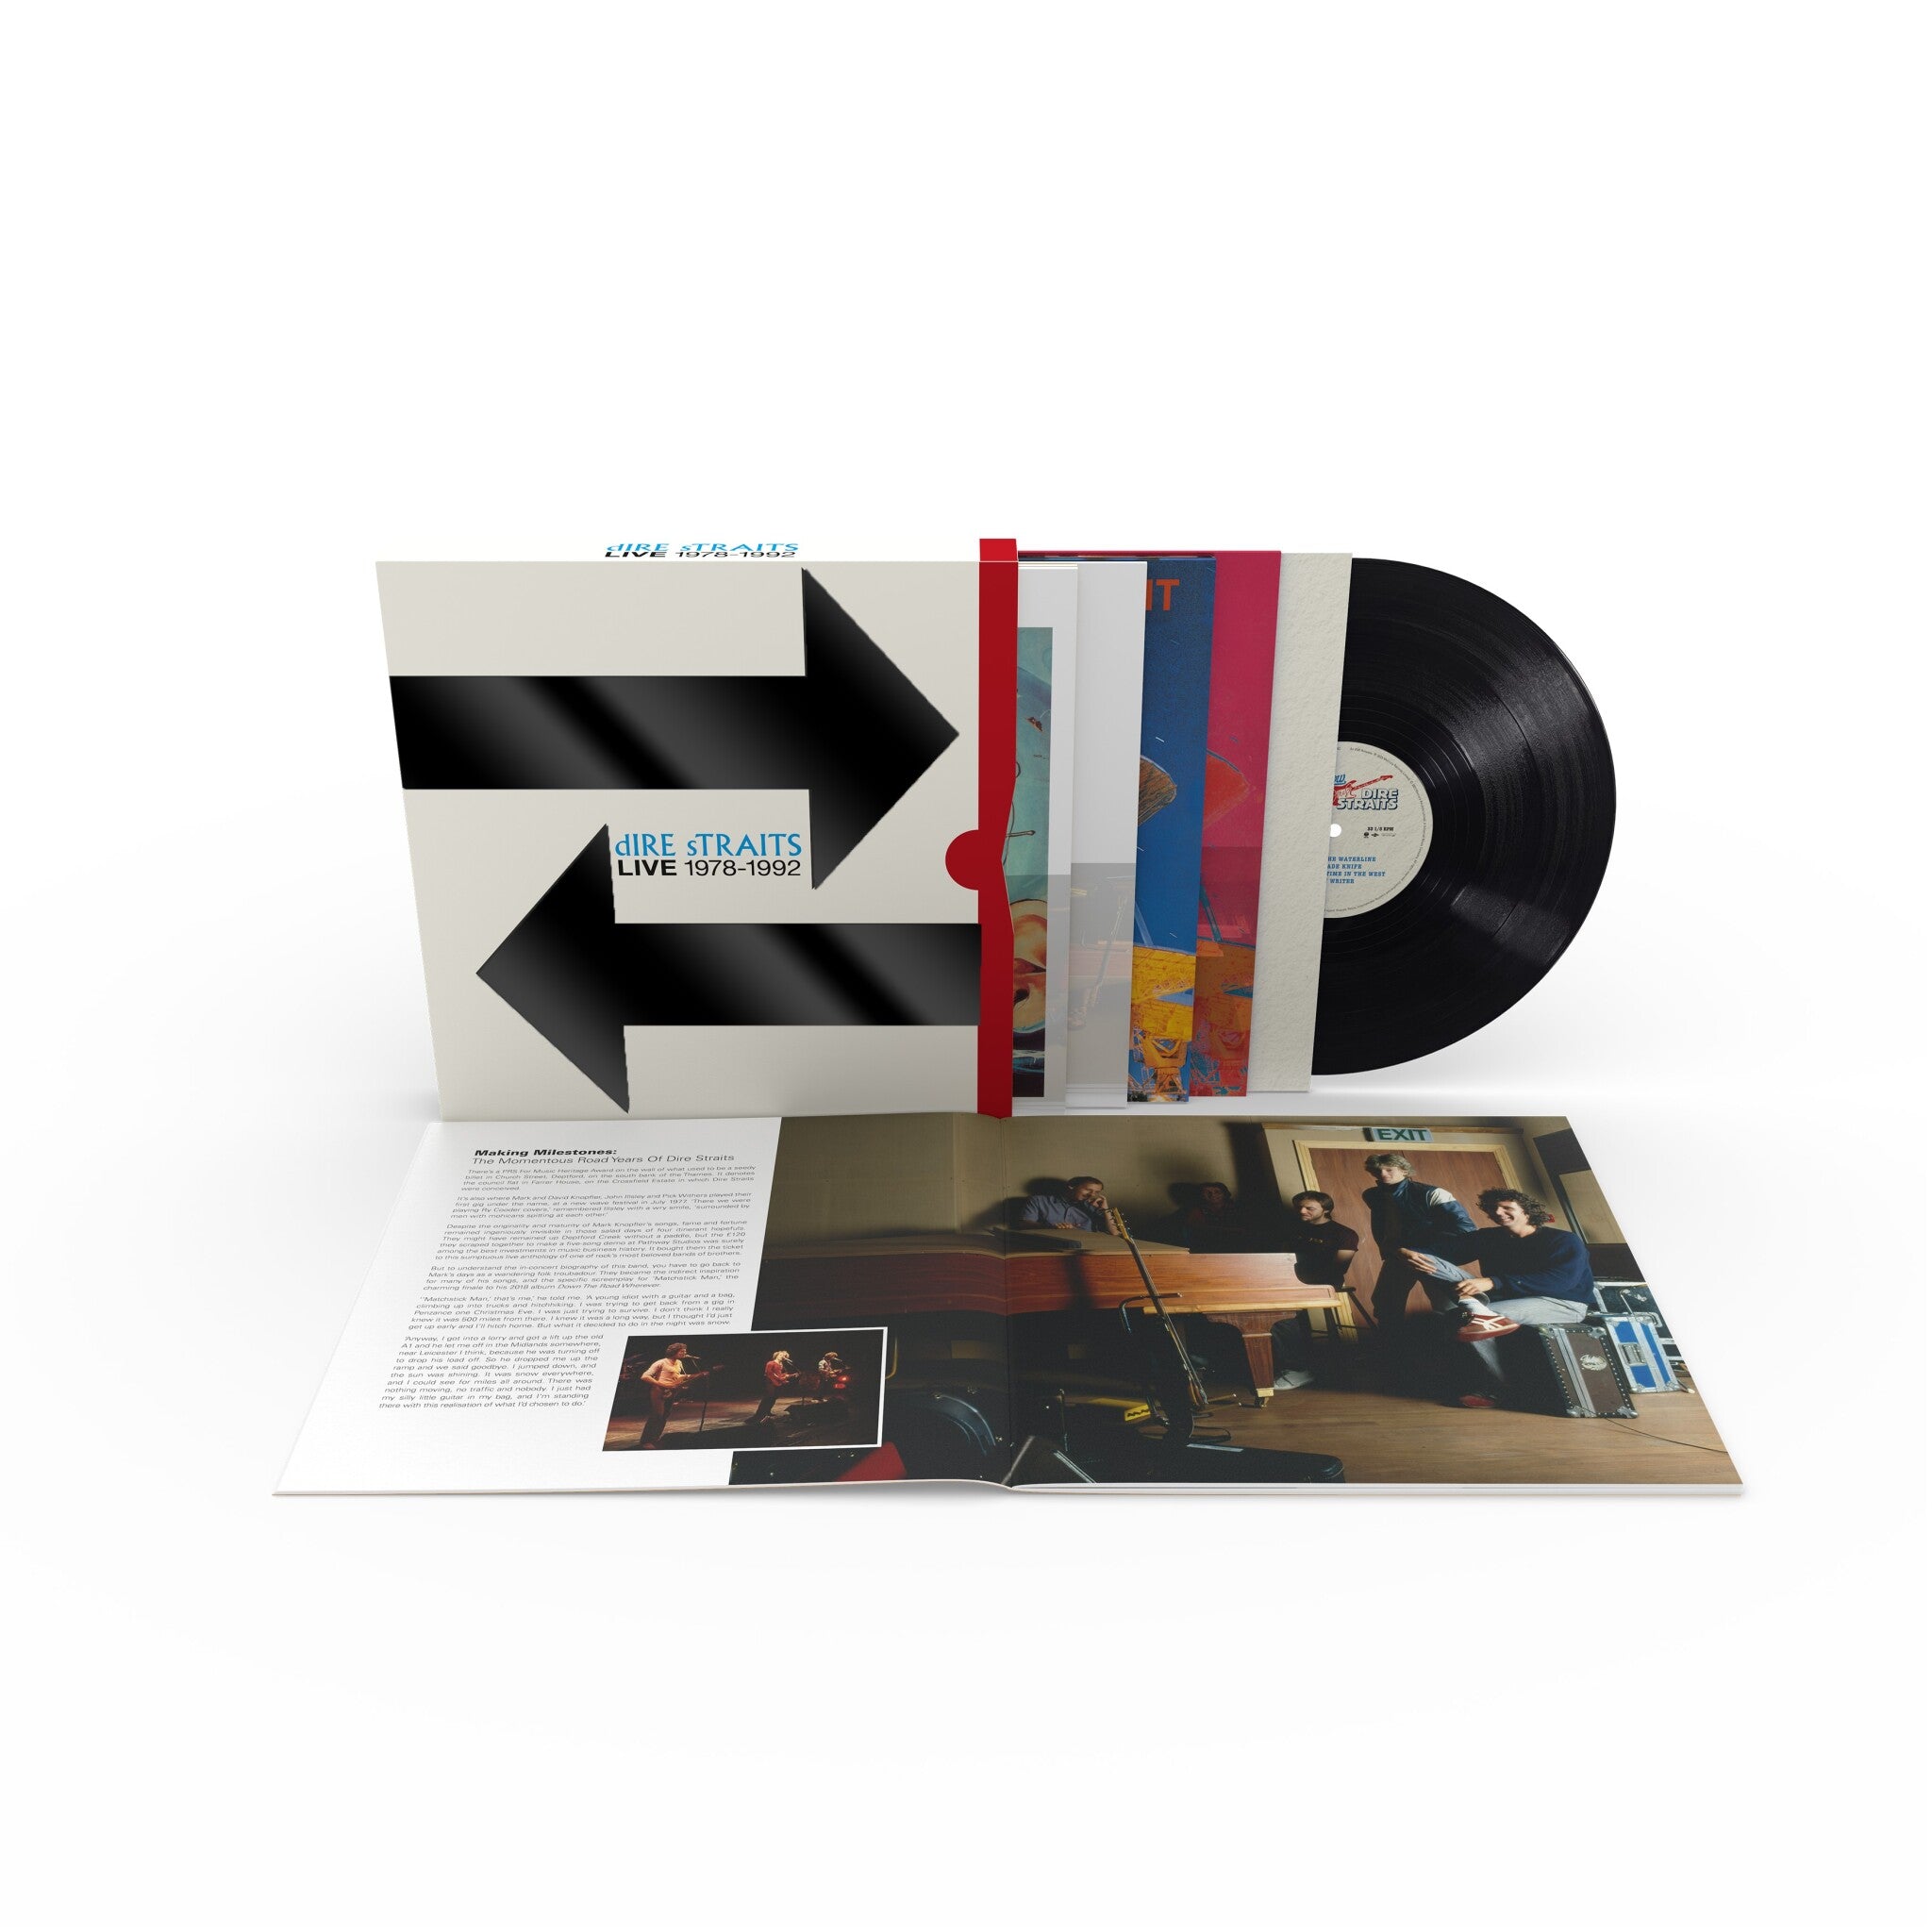 DIRE STRAITS - The Live Albums: 1978-1992 - 12LP - Vinyl Box Set